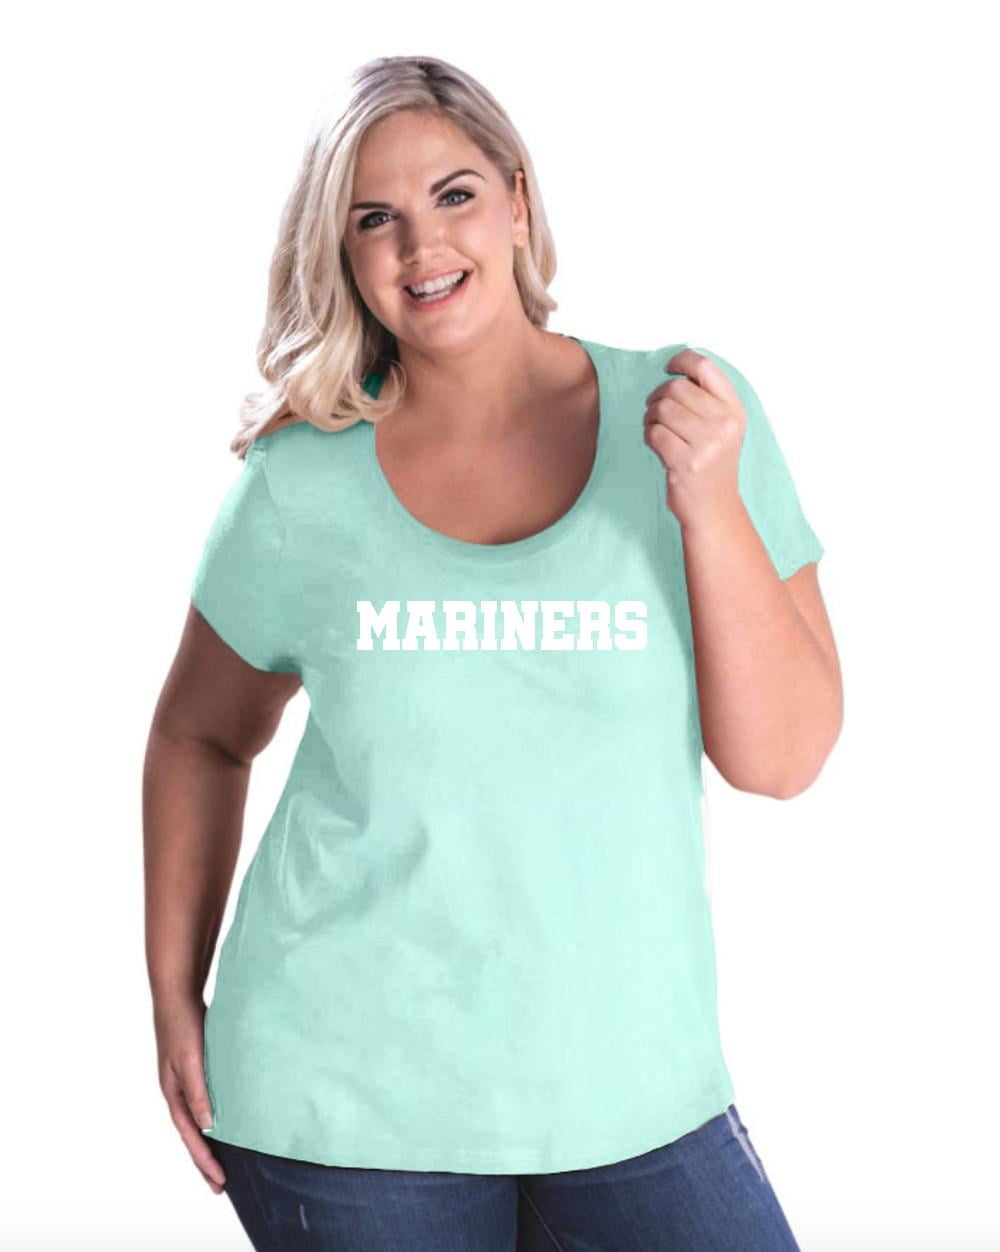 teal mariners shirt